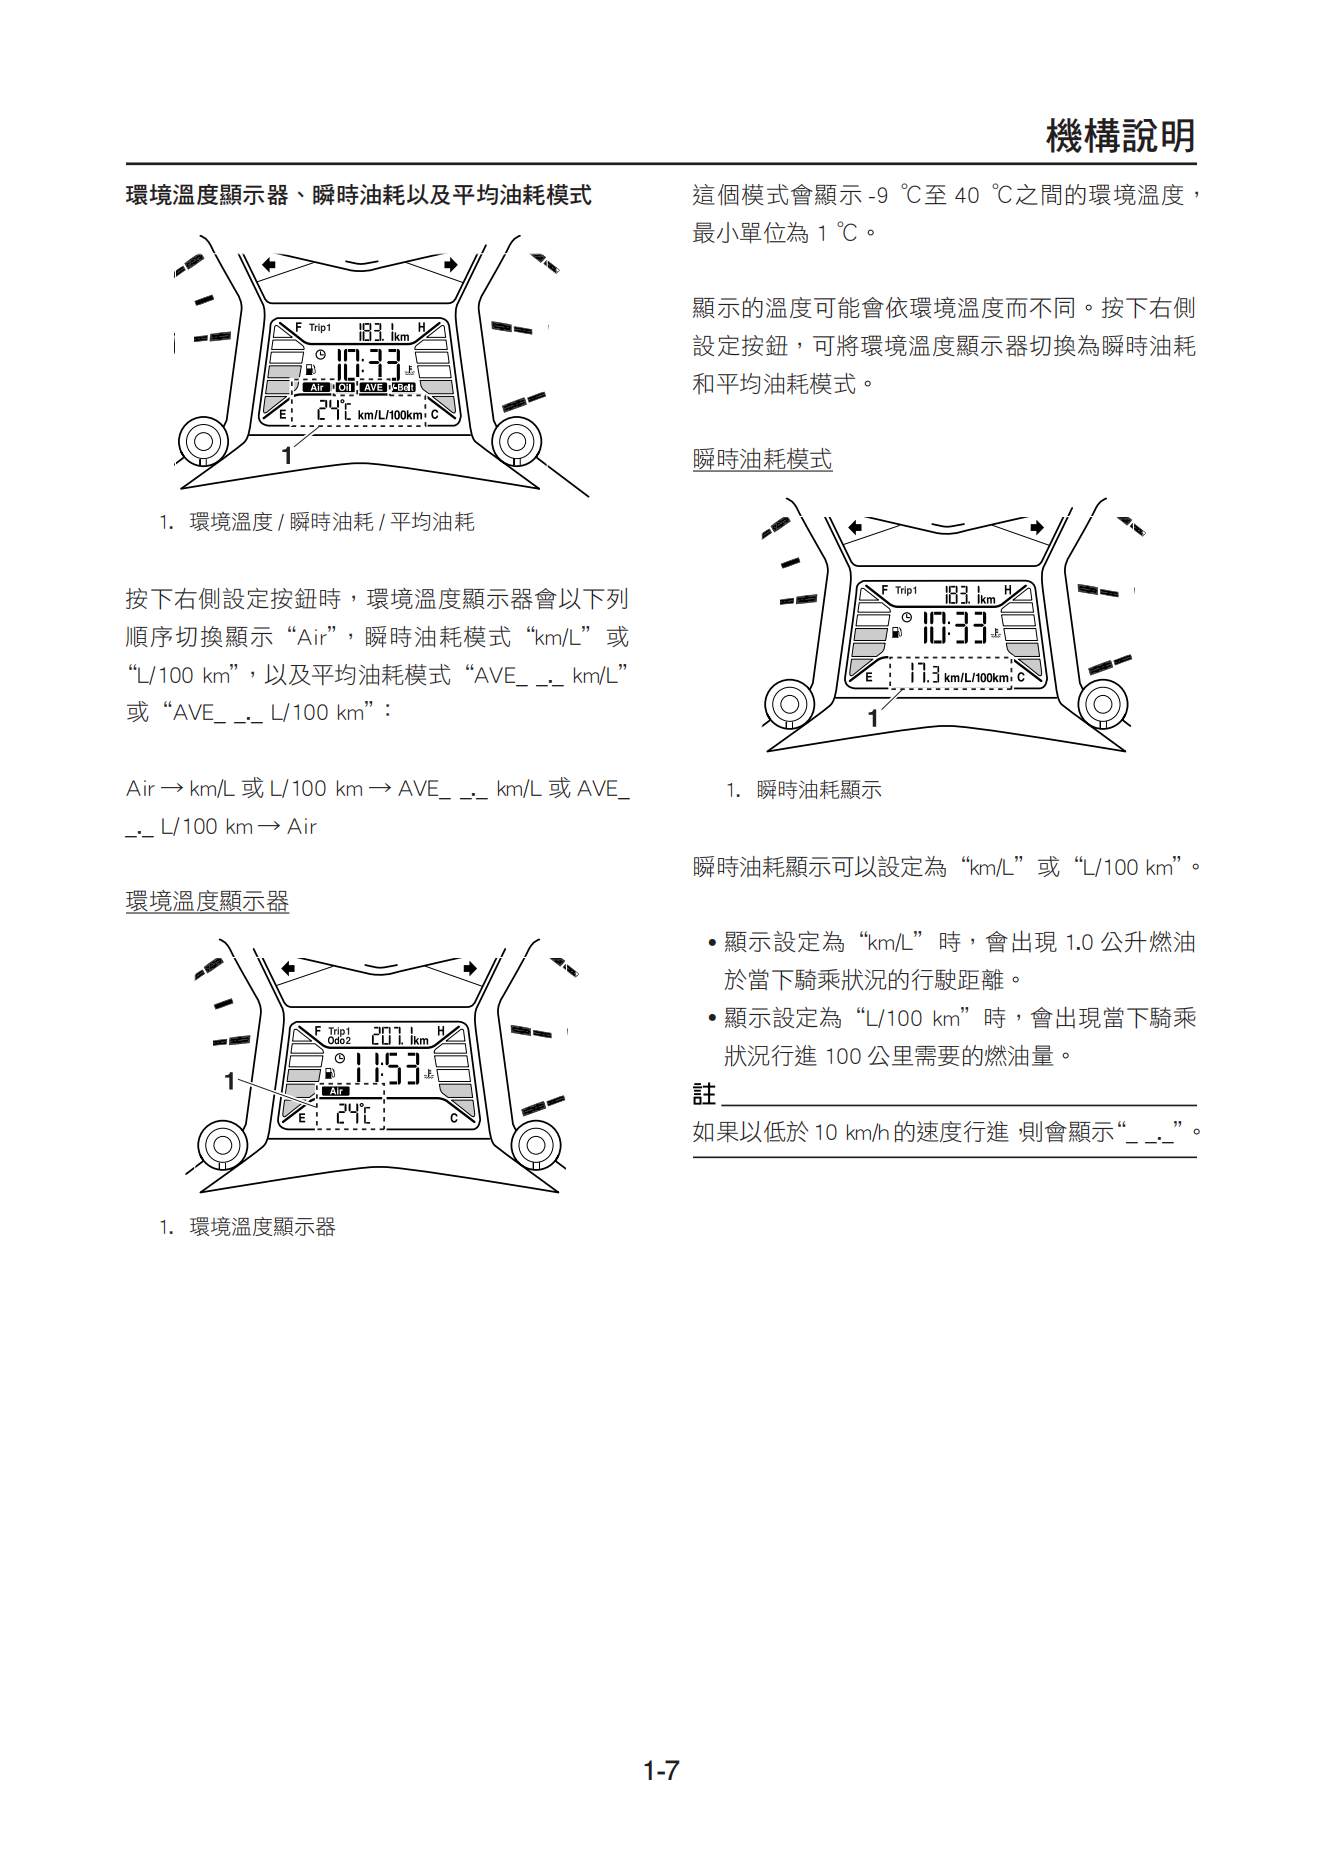 繁体中文2012-2015年雅马哈tmax530维修手册xp500a维修手册插图2